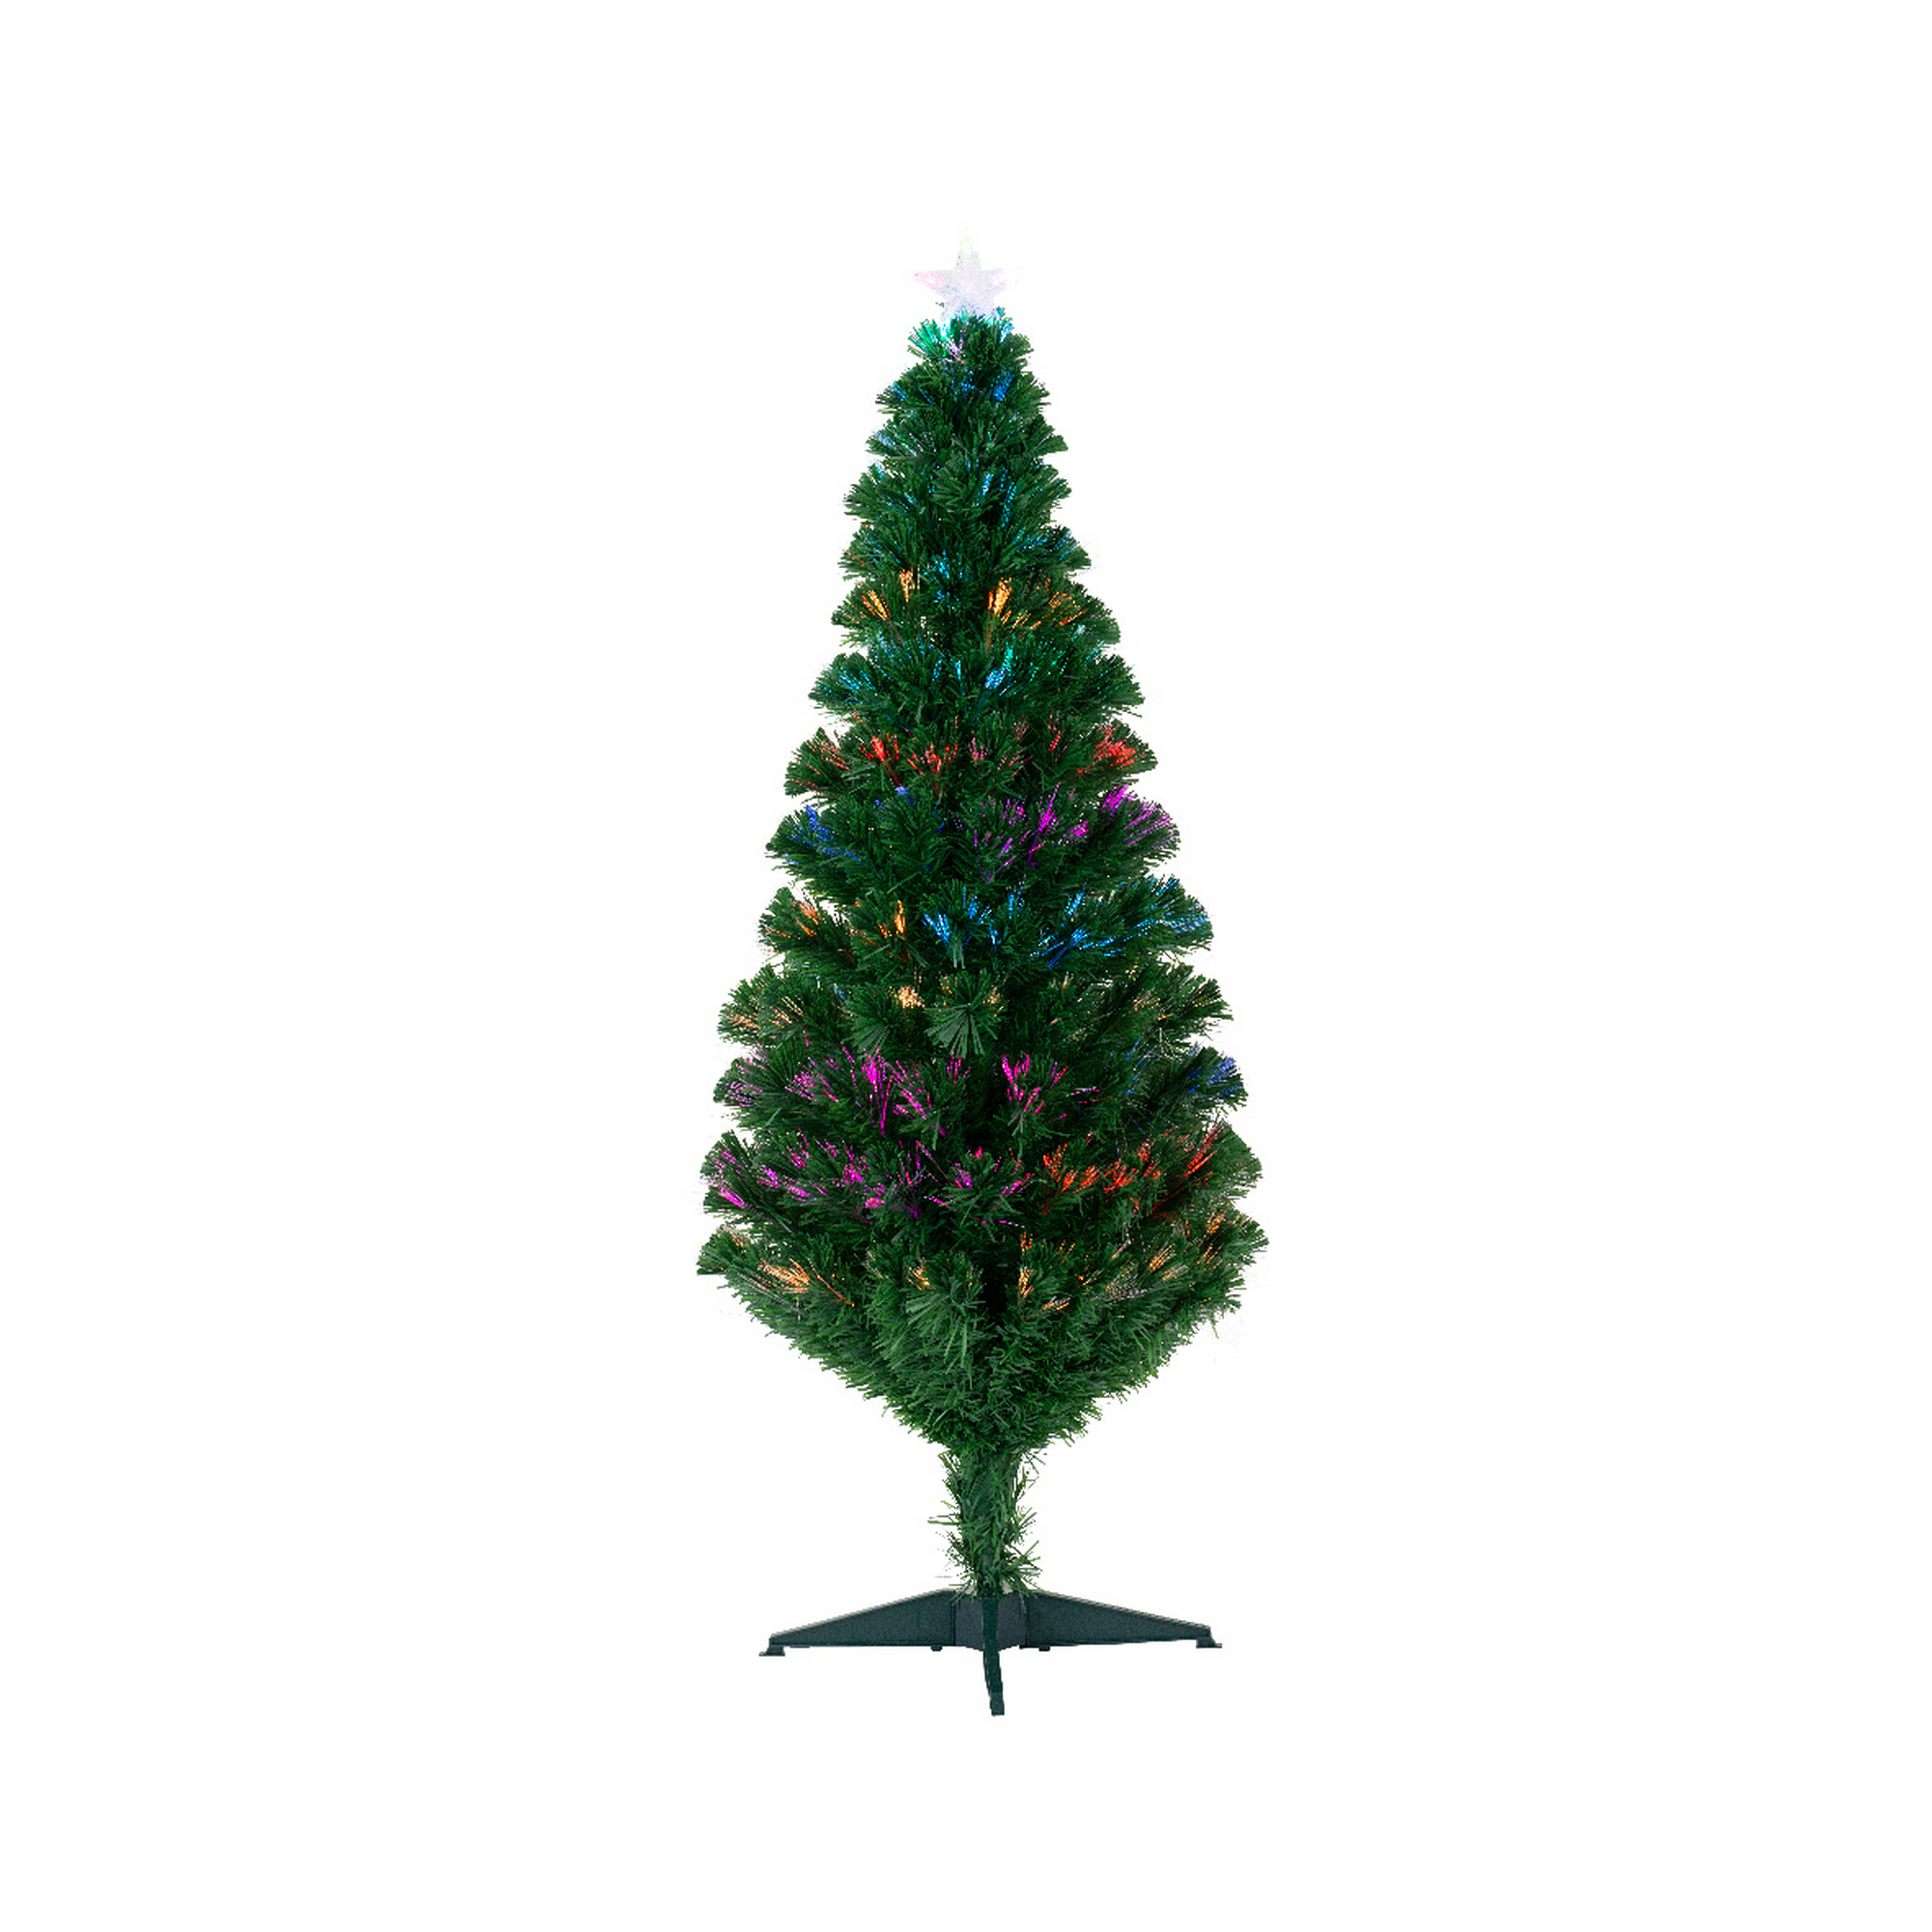 Künstlicher Weihnachtsbaum 'Burtley' grün 120 cm, mit LED-Beleuchtung + product picture